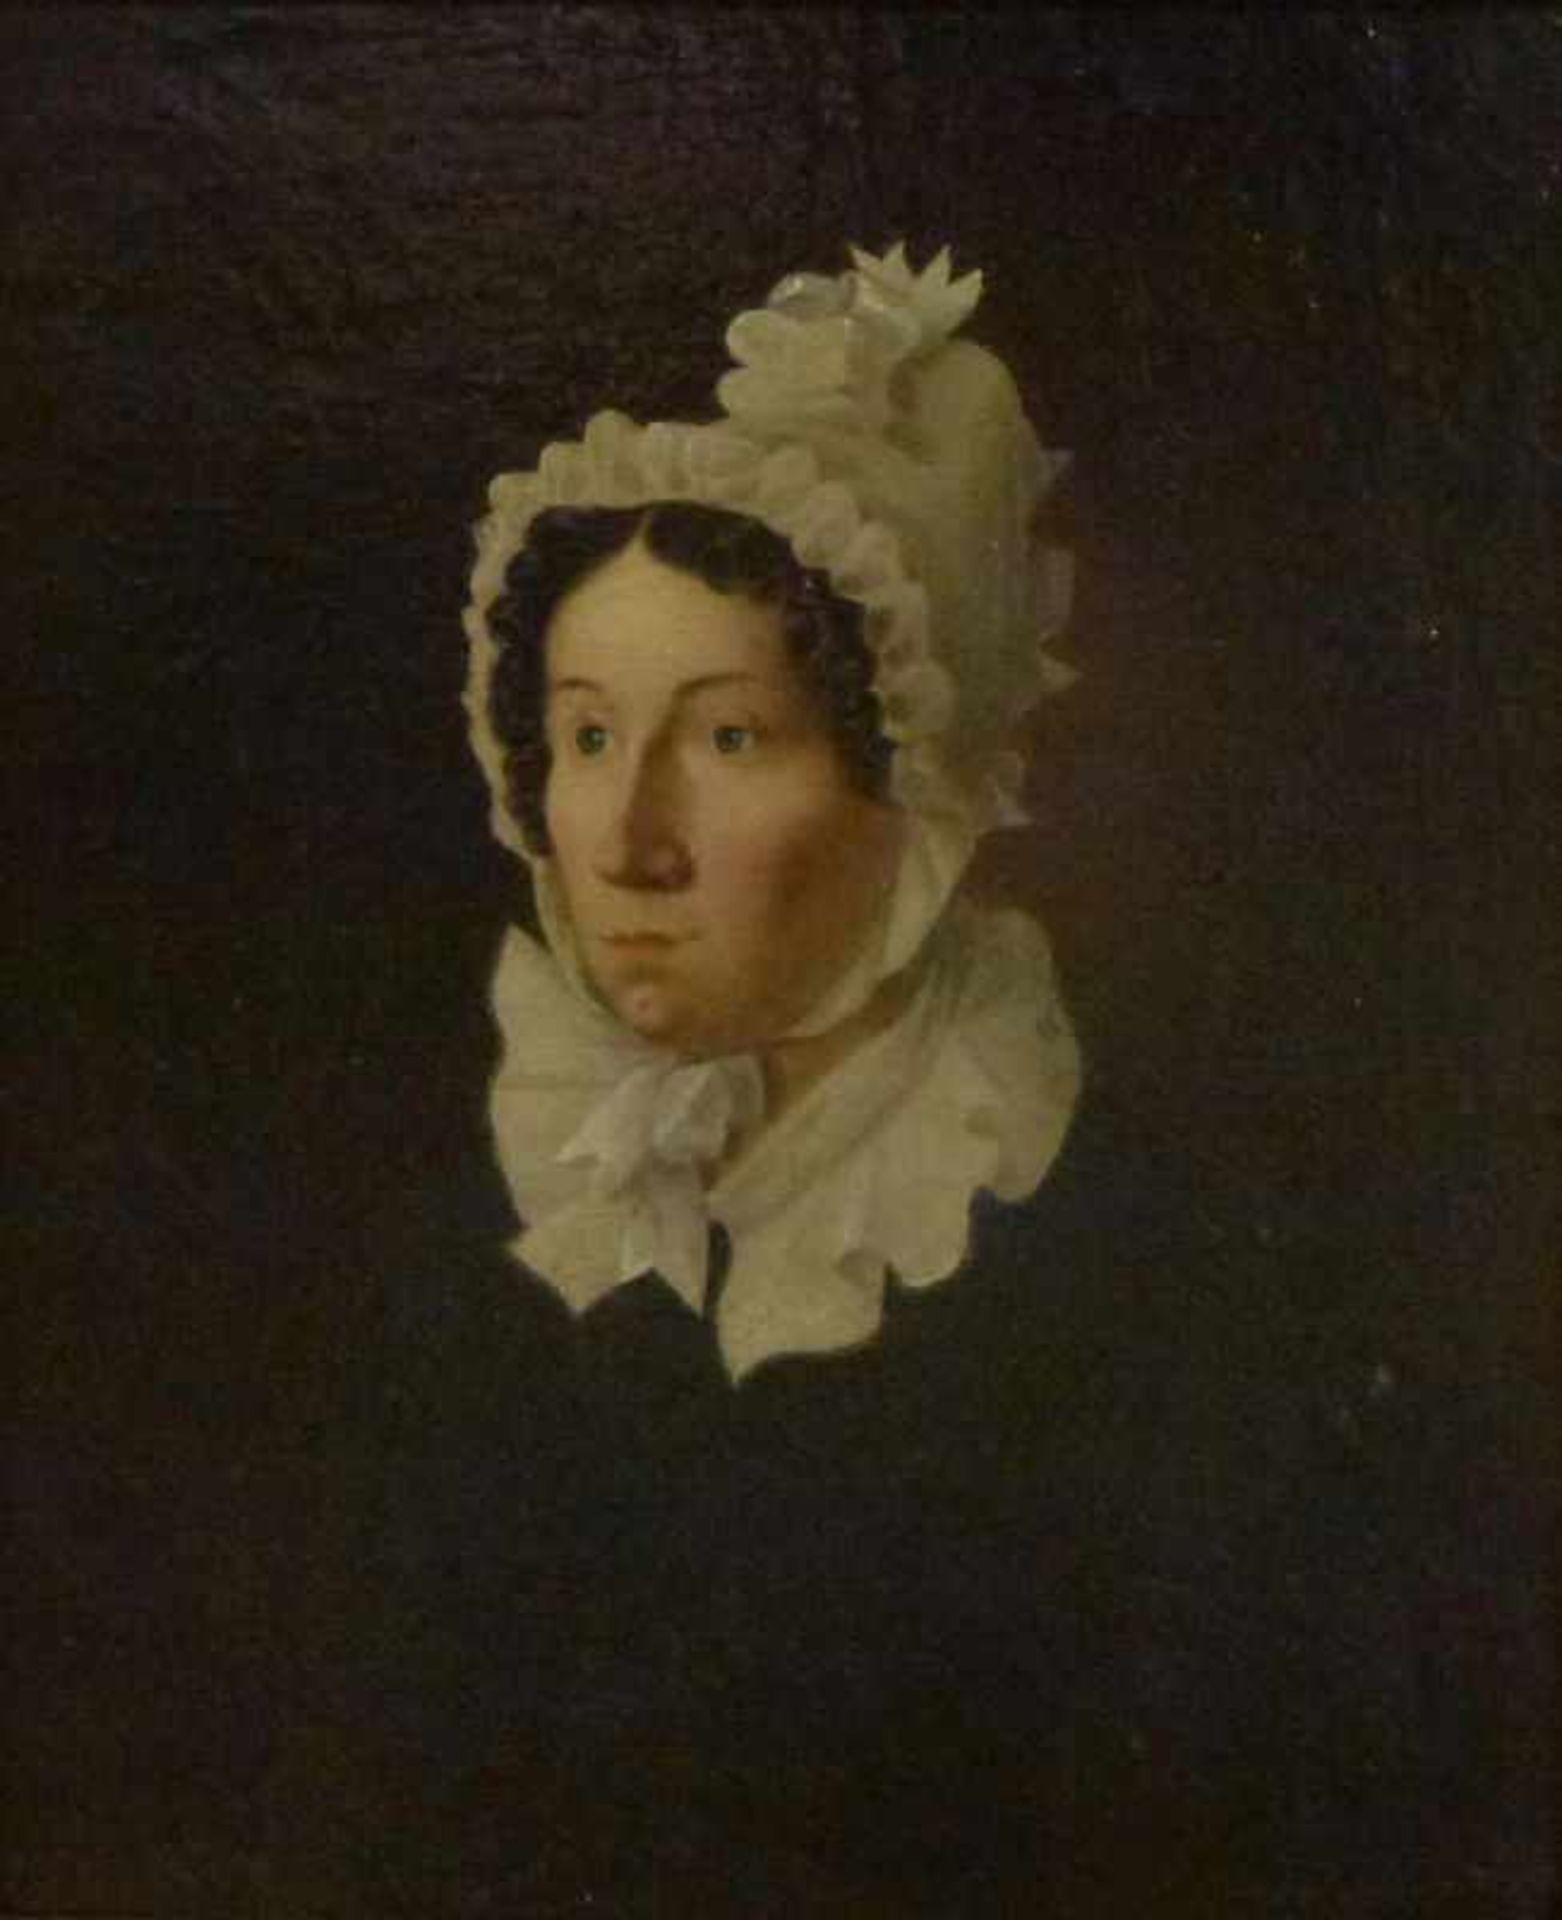 Portrait einer Dame, 1849 Öl/Lw, sign.: E.Meuten? Biedermeierdame in Rüschenhaube undKragen, GR,